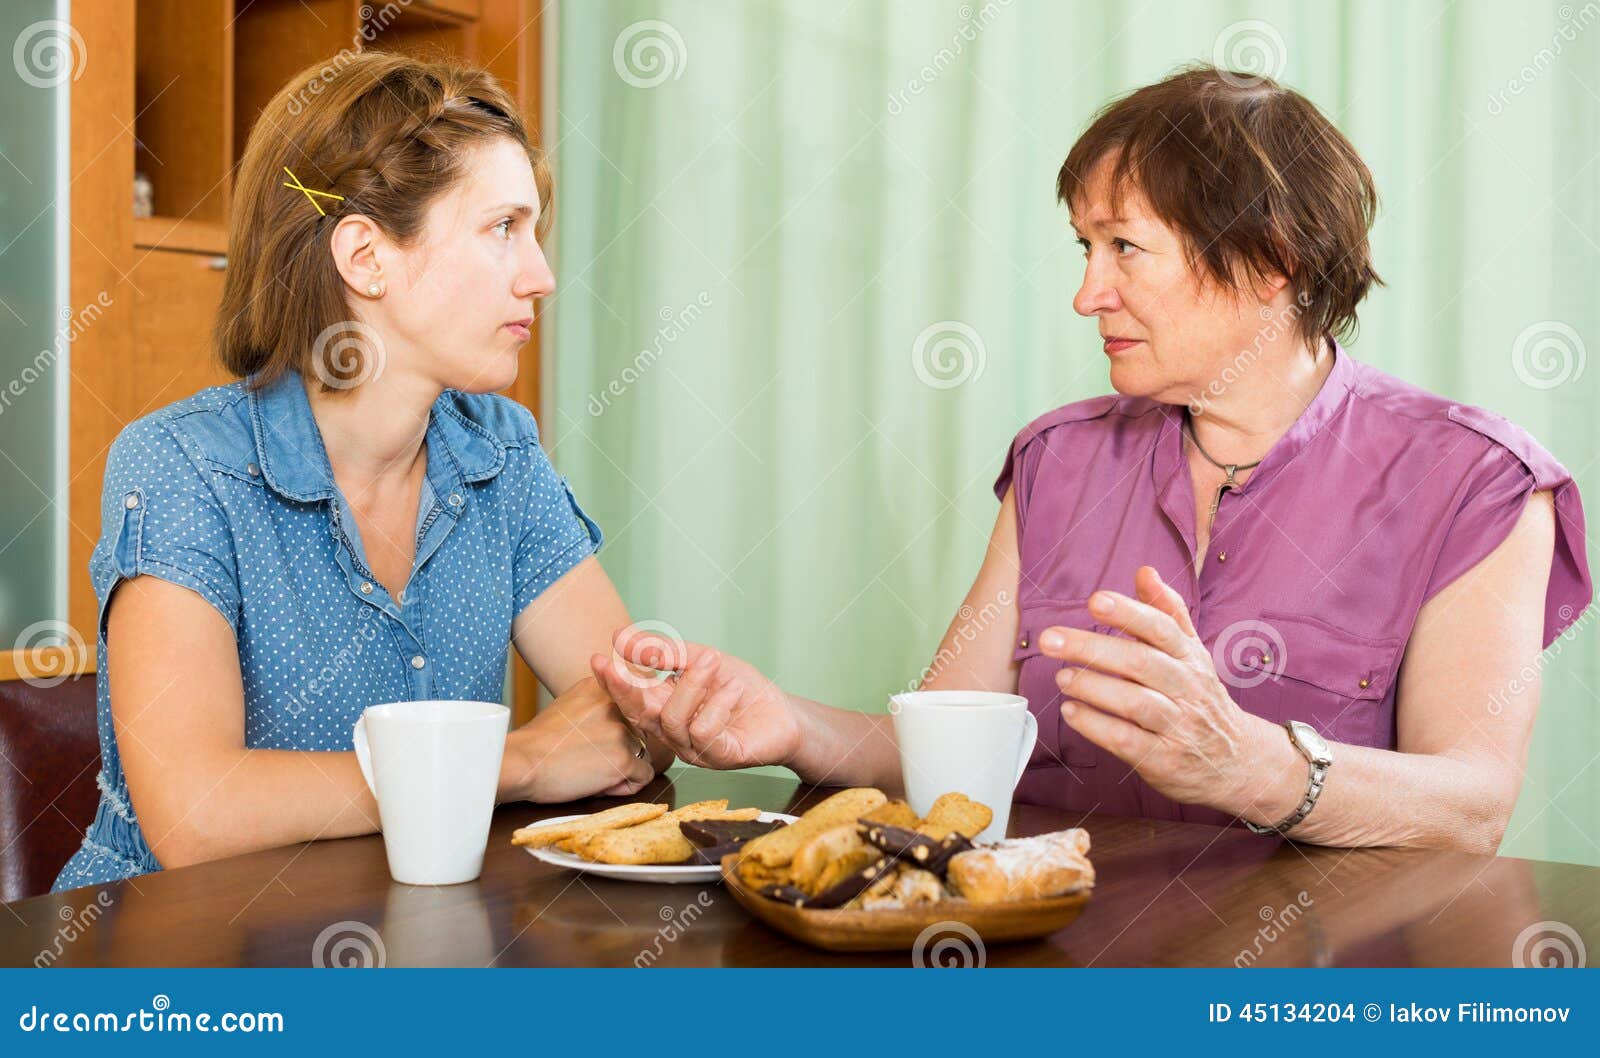 Полные жены с разговором. Женщины разговаривают на кухне. Мать и дочь беседуют. Молодая и пожилая женщины беседуют рисунок. Разговор со свекровью.